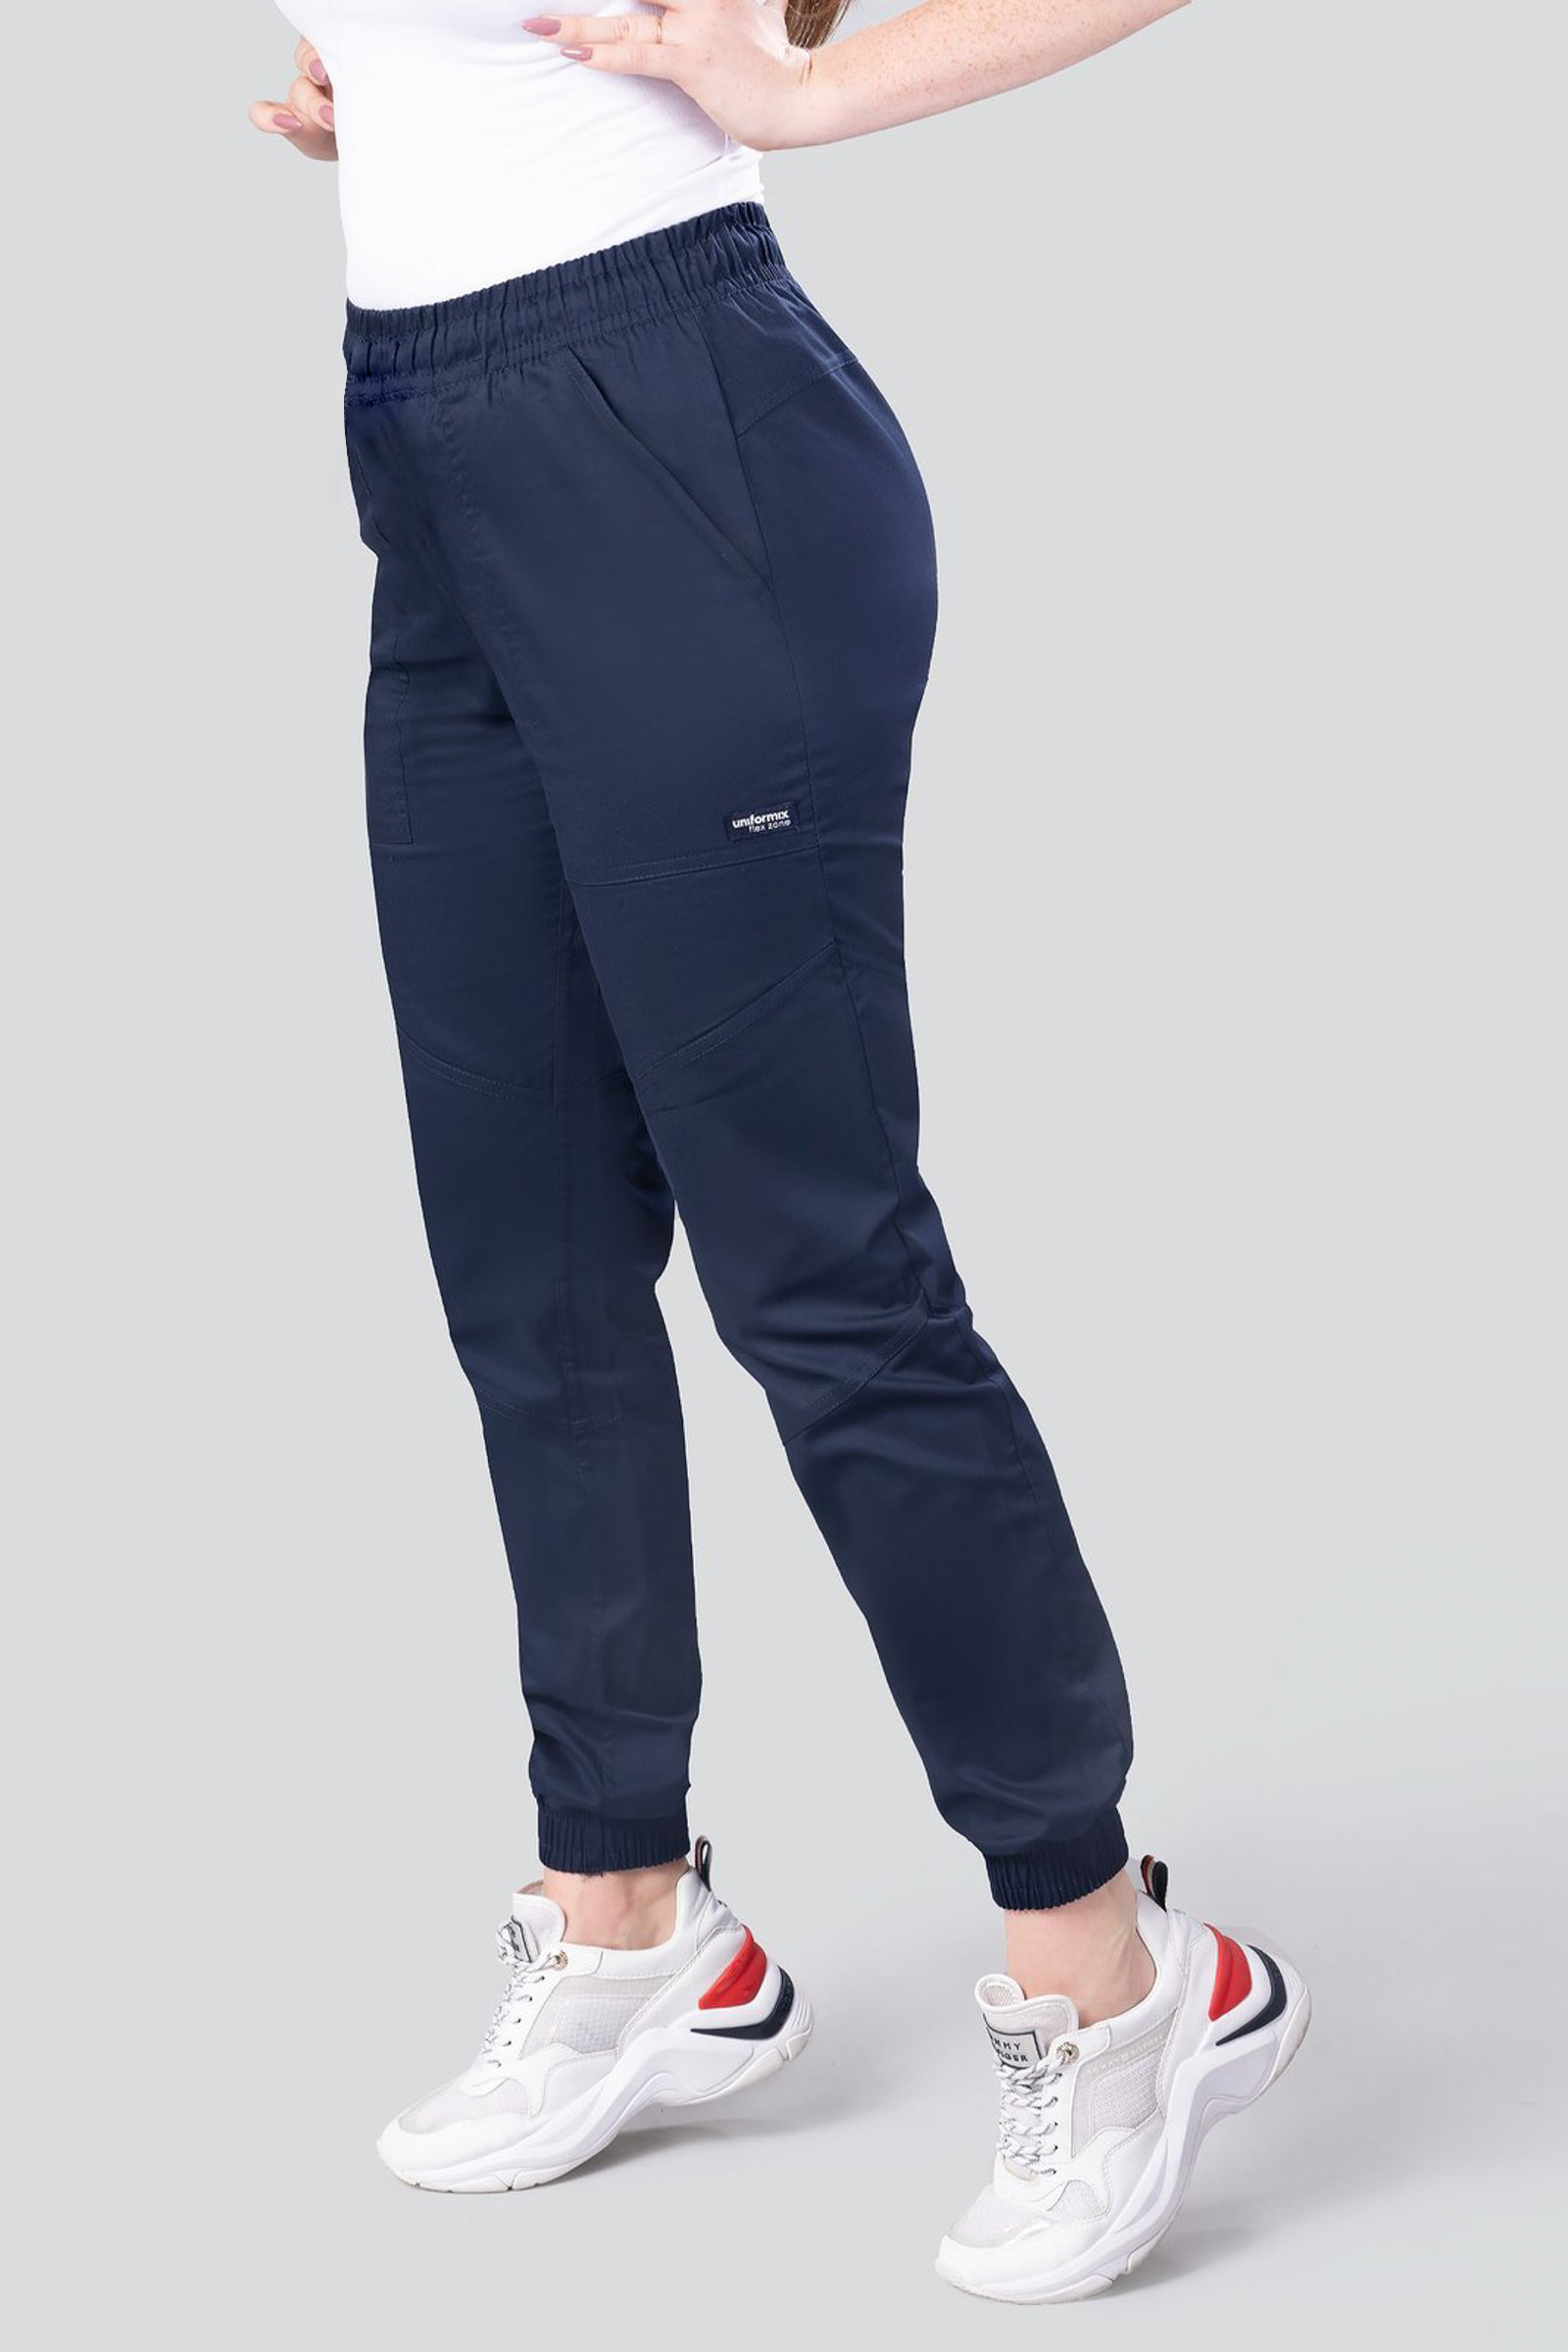 Spodnie medyczne damskie, joggery Uniformix FLEX ZONE, FZ2056